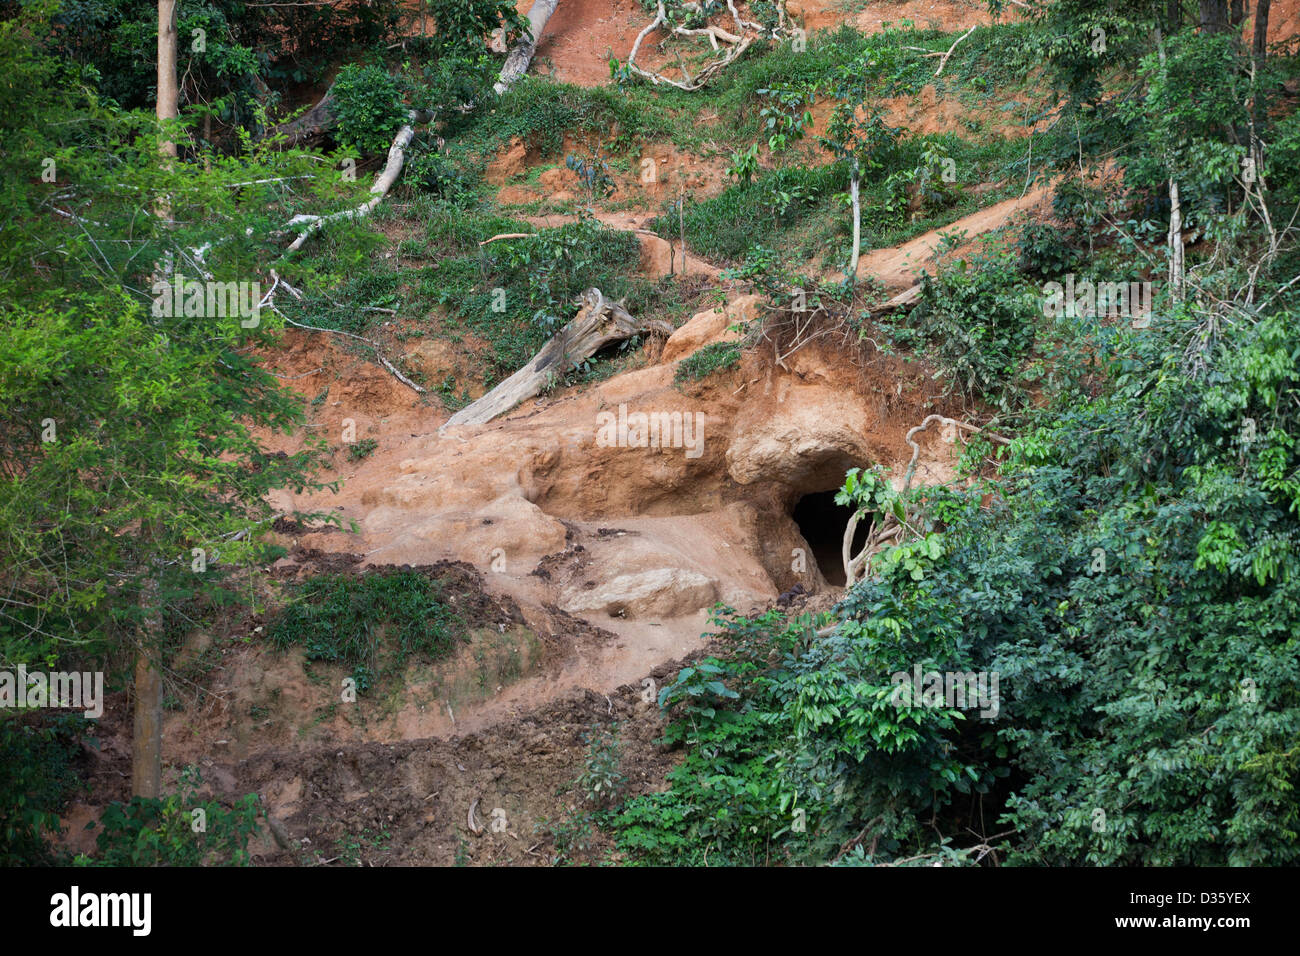 Kongo, 26. September 2012: ein Elefant-Leckstein am Fluss Dja.  Wald-Elefanten kommen hier regelmäßig Mineralien erhalten sie benötigen, um Suppliment ihre Ernährung. Stockfoto